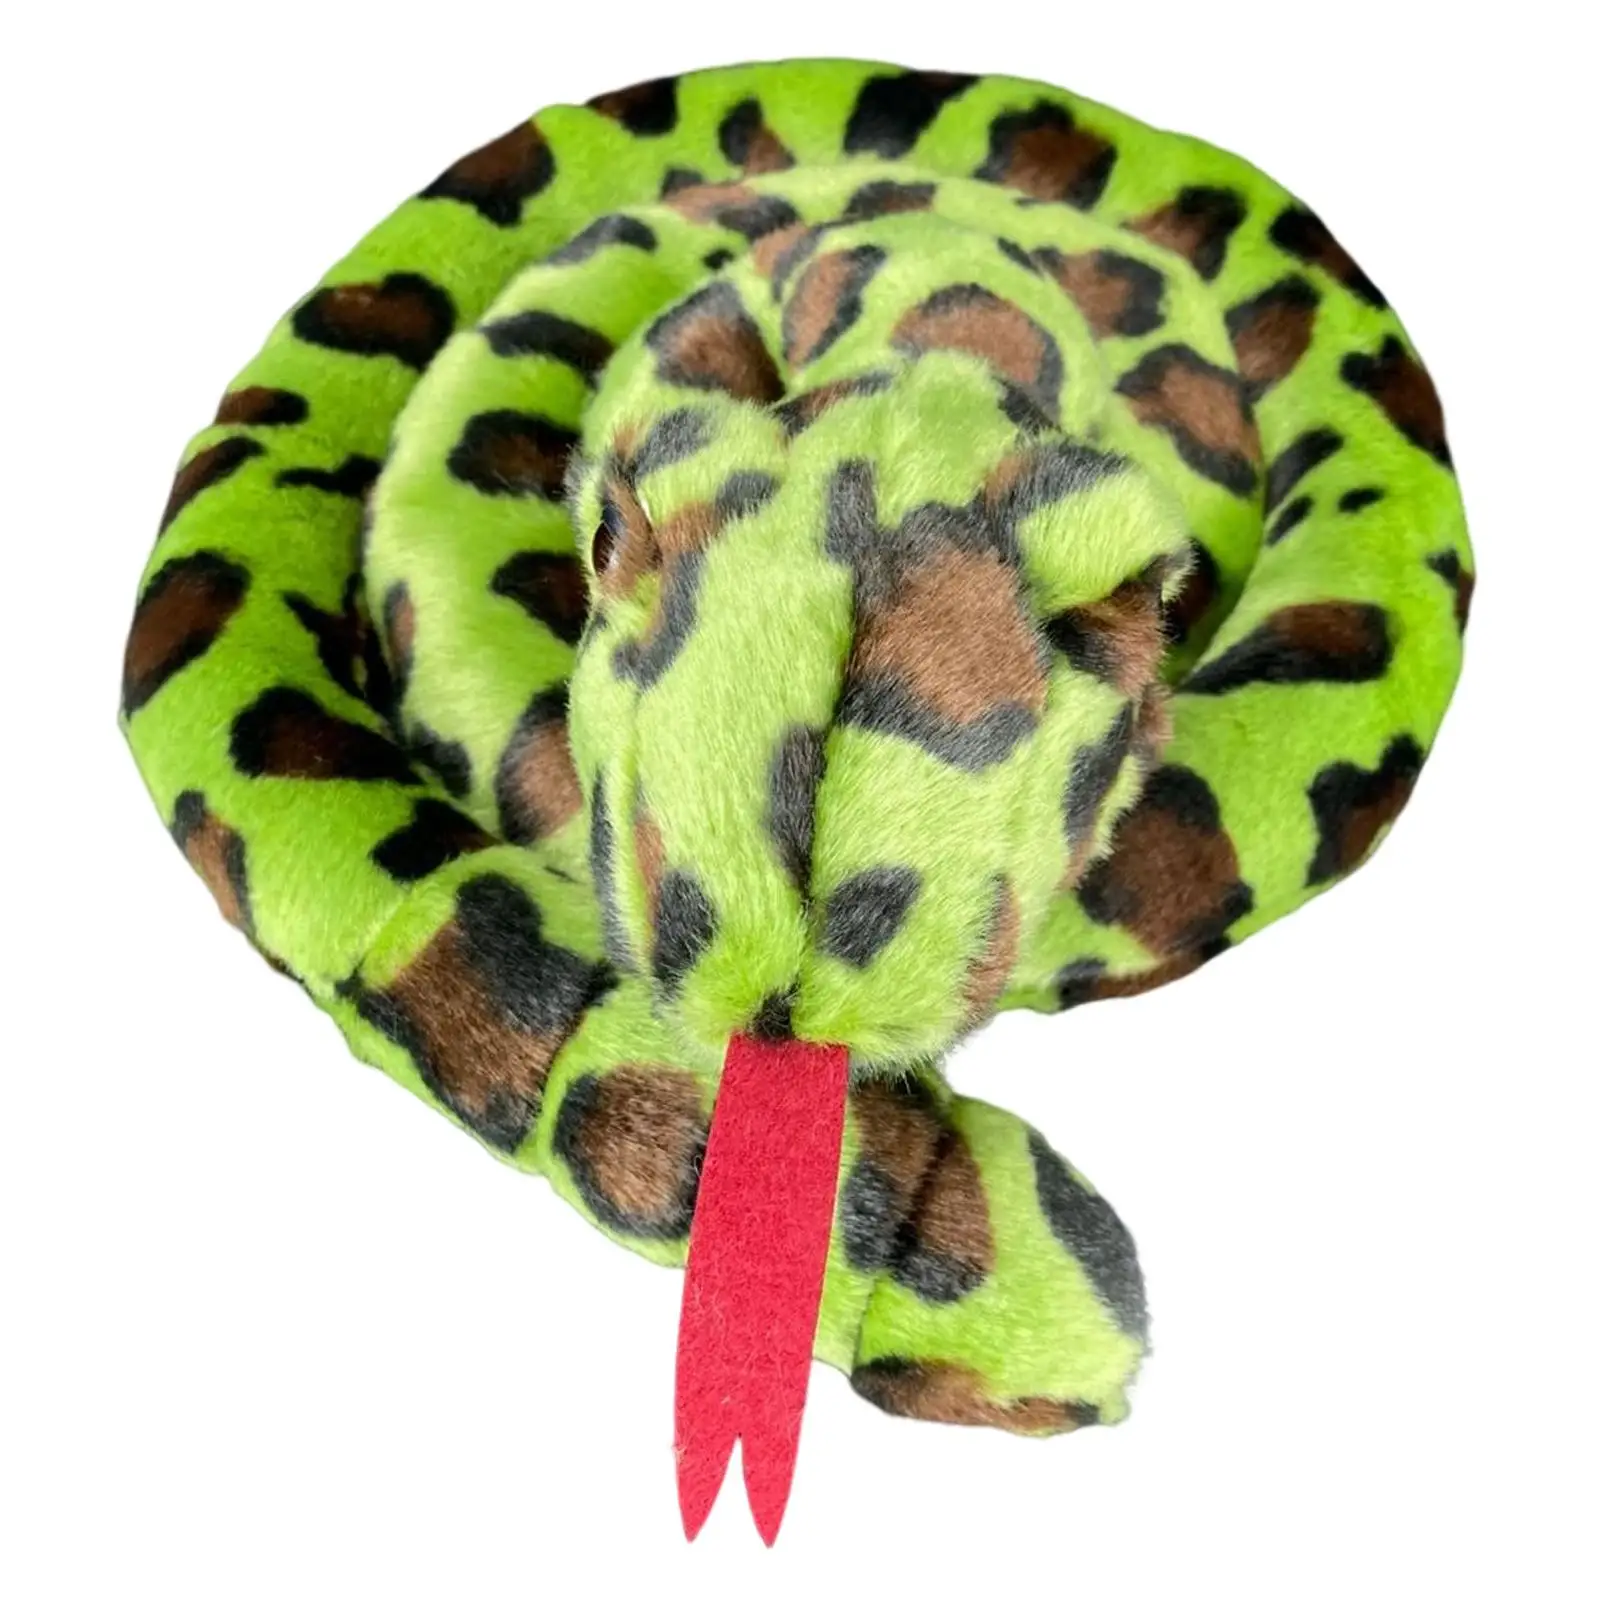 130cm Stuffed Animal serpent ,serpent Pillow Doll Toys ,Stuffed serpent toys ,Stuffed serpent toys Pillow for Halloween ,Home